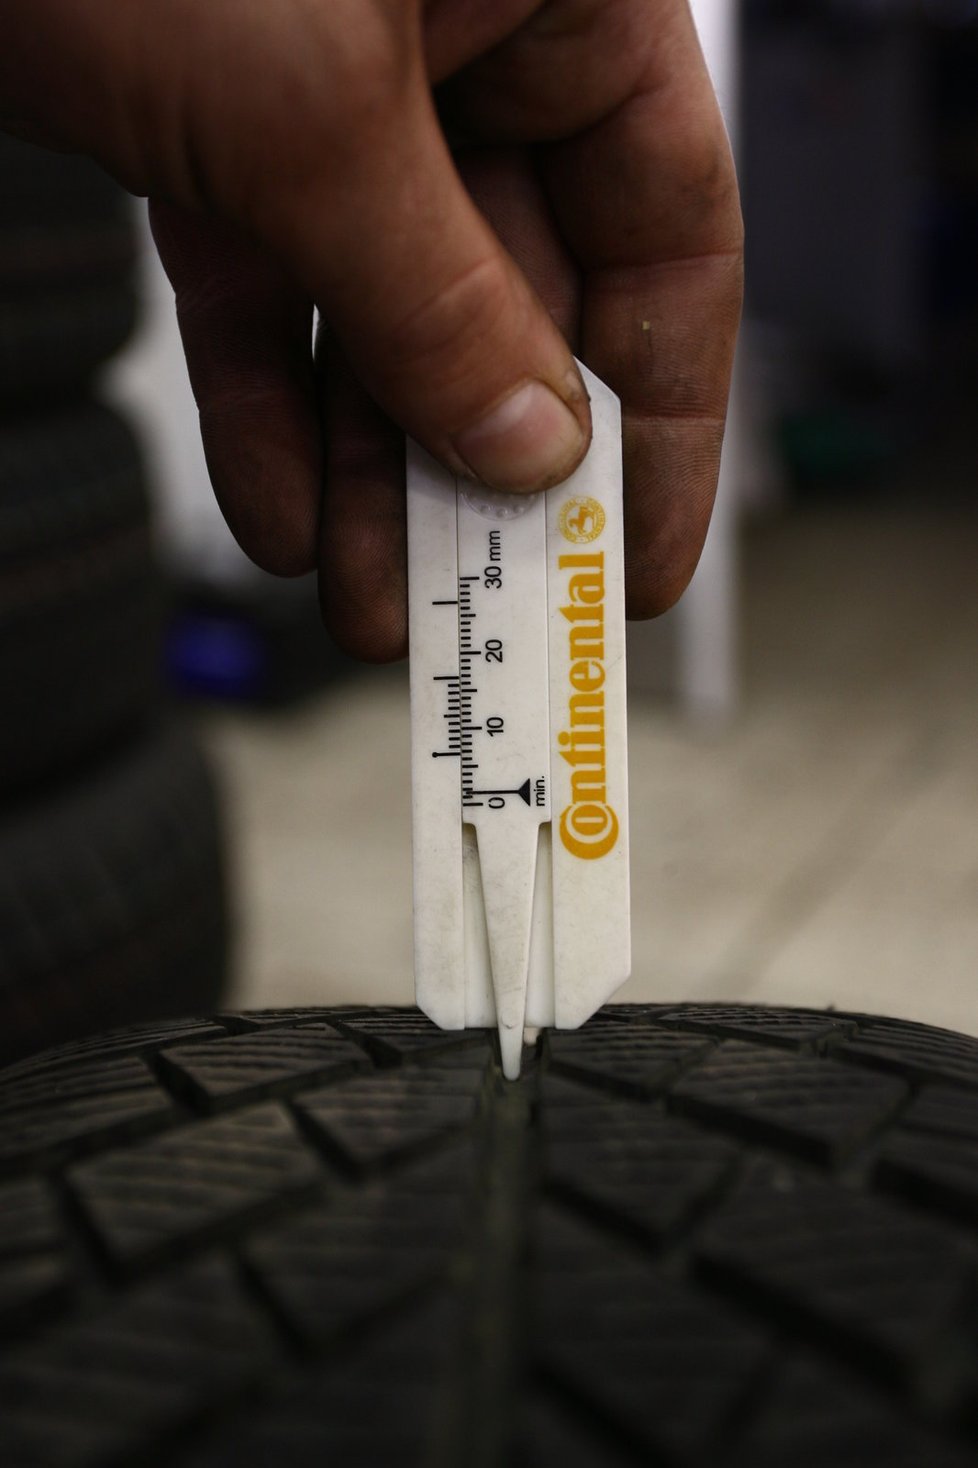 Legislativa vyžaduje odpovídající označení zimní pneumatiky a hloubku 4 mm pro dozy do 3,5 tuny. Ale jestli má pneumatika další pro zimu požadované vlastnosti, tu předpisy neřeší.